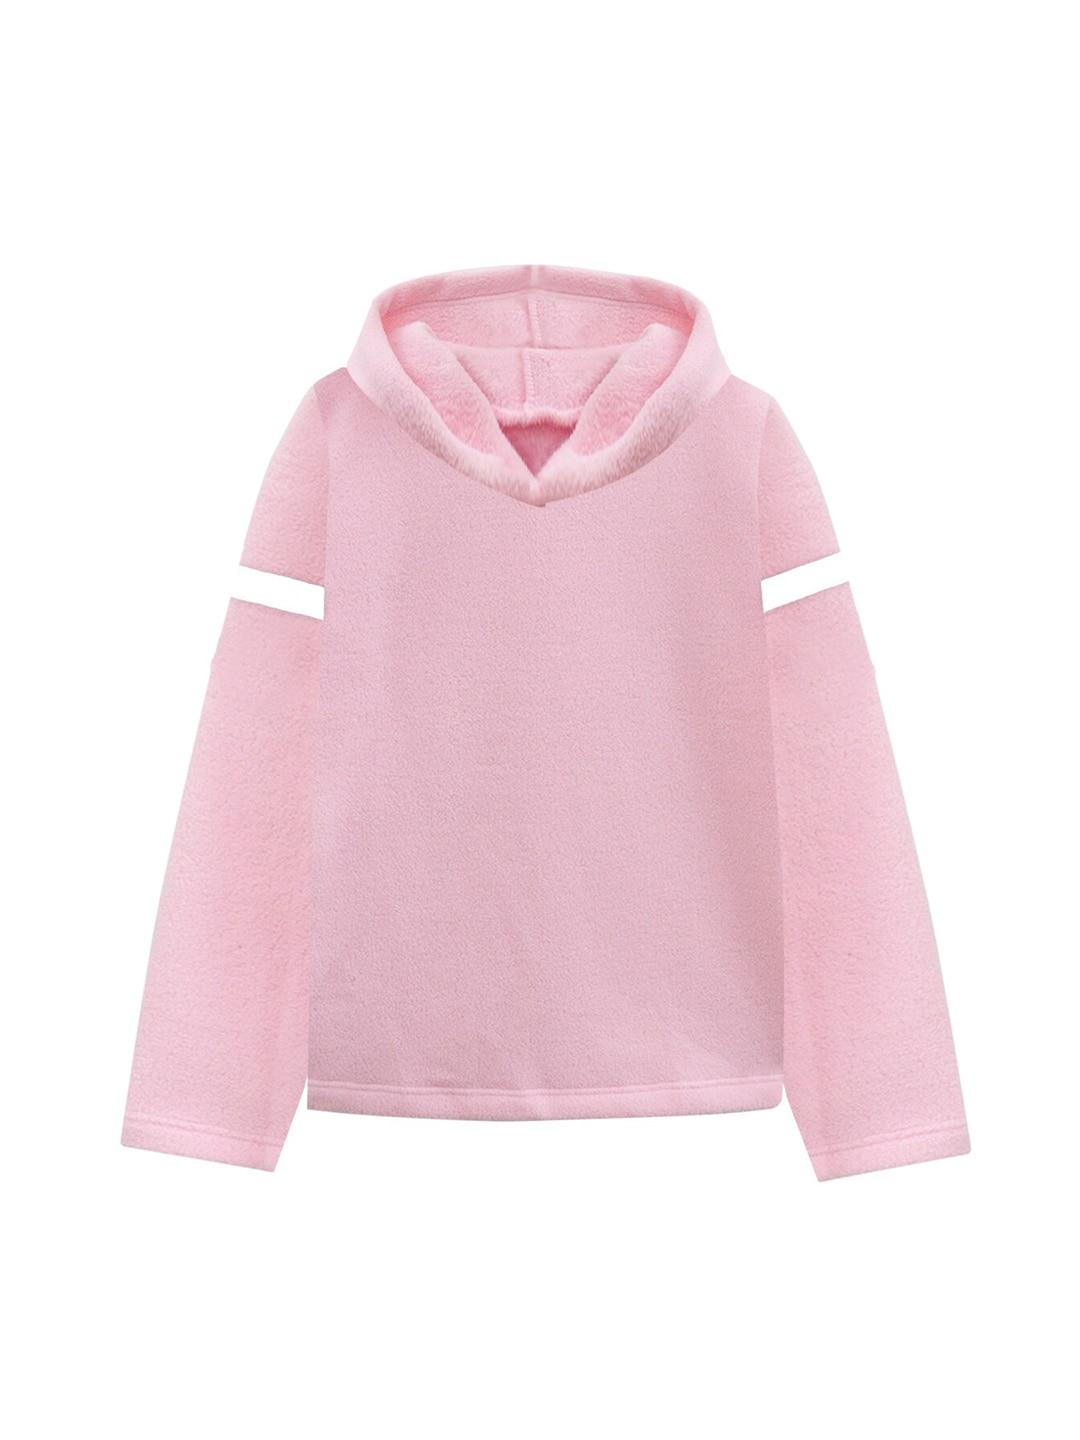 a t u n women pink hooded fleece sweatshirt